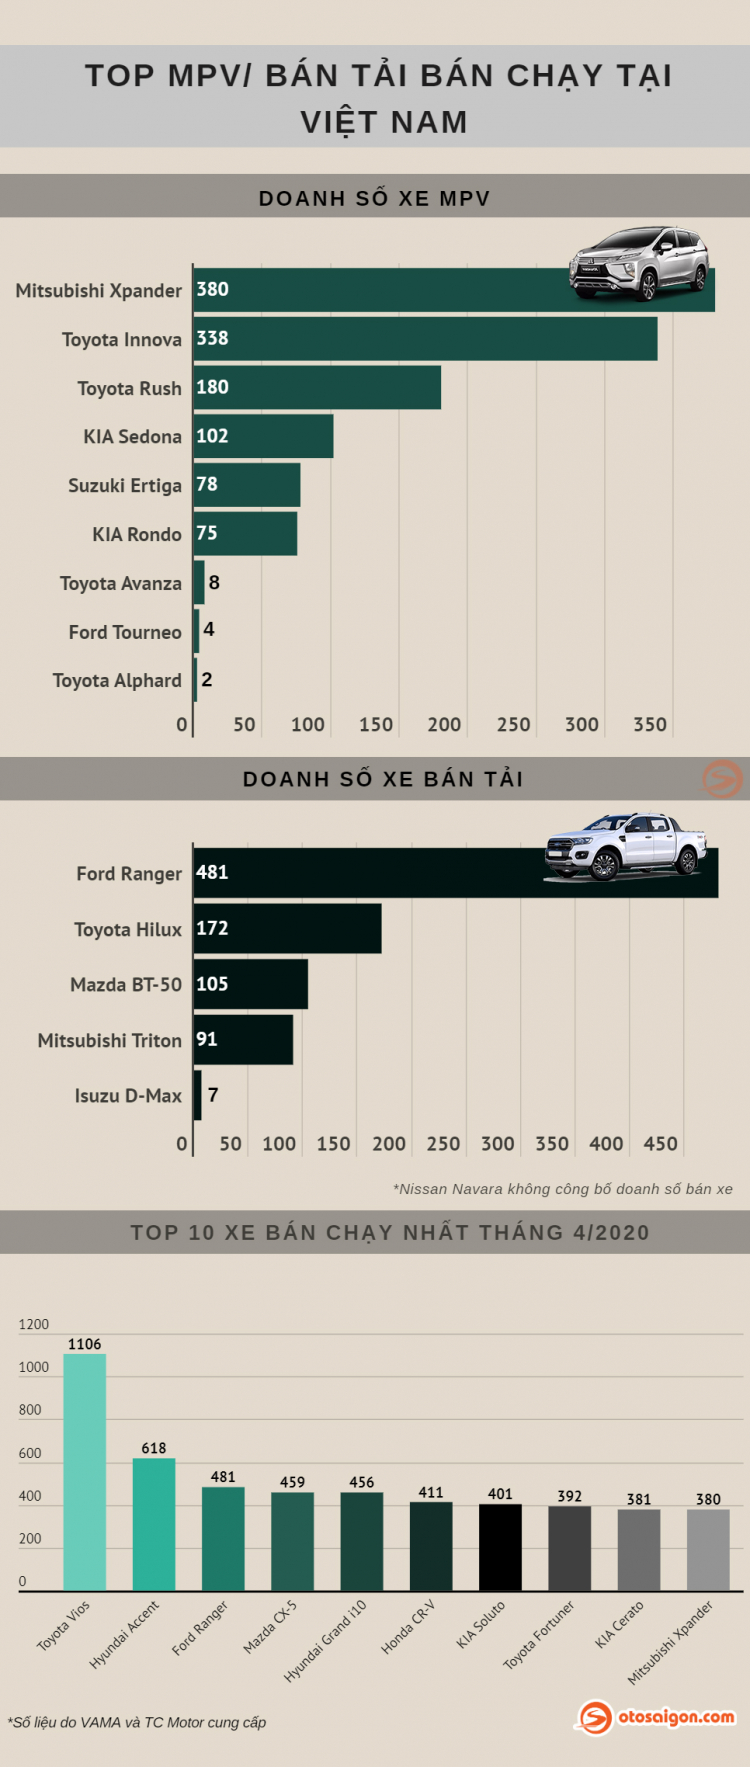 [Infographic] Top MPV/Bán tải bán chạy tại Việt Nam tháng 4/2020: Xpander hụt hơi vì COVID